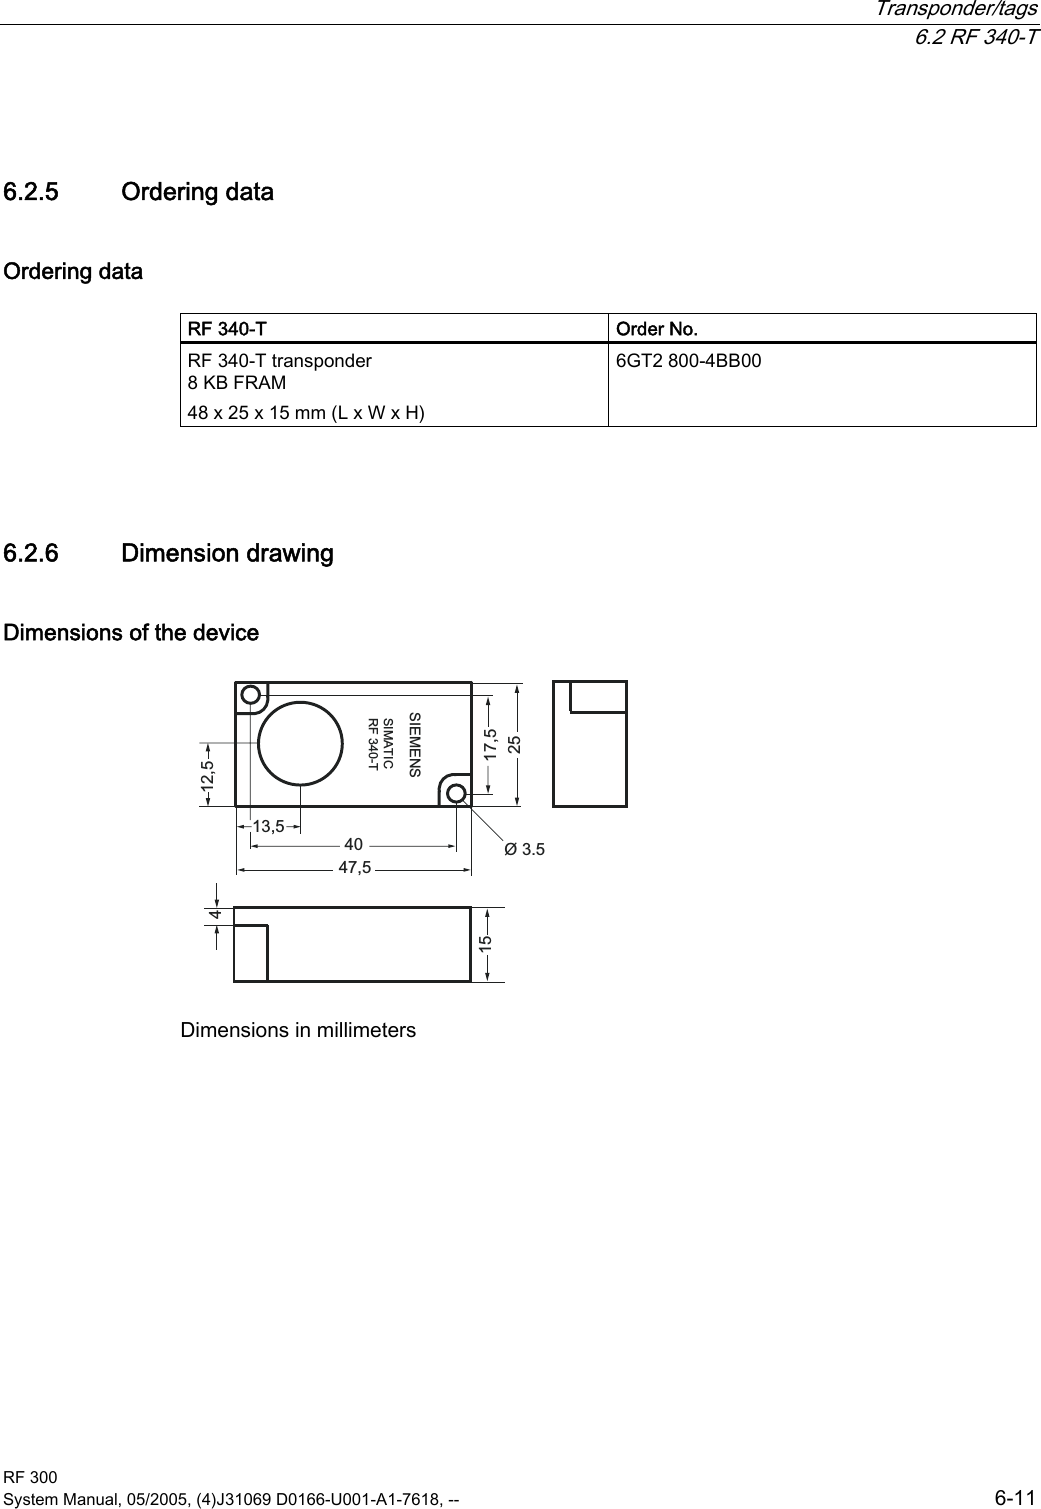  Transponder/tags  6.2 RF 340-T RF 300 System Manual, 05/2005, (4)J31069 D0166-U001-A1-7618, --  6-11 6.2.5  Ordering data Ordering data  RF 340-T   Order No. RF 340-T transponder  8 KB FRAM  48 x 25 x 15 mm (L x W x H) 6GT2 800-4BB00  6.2.6  Dimension drawing Dimensions of the device 6,(0(166,0$7,&amp;5)7 Dimensions in millimeters 